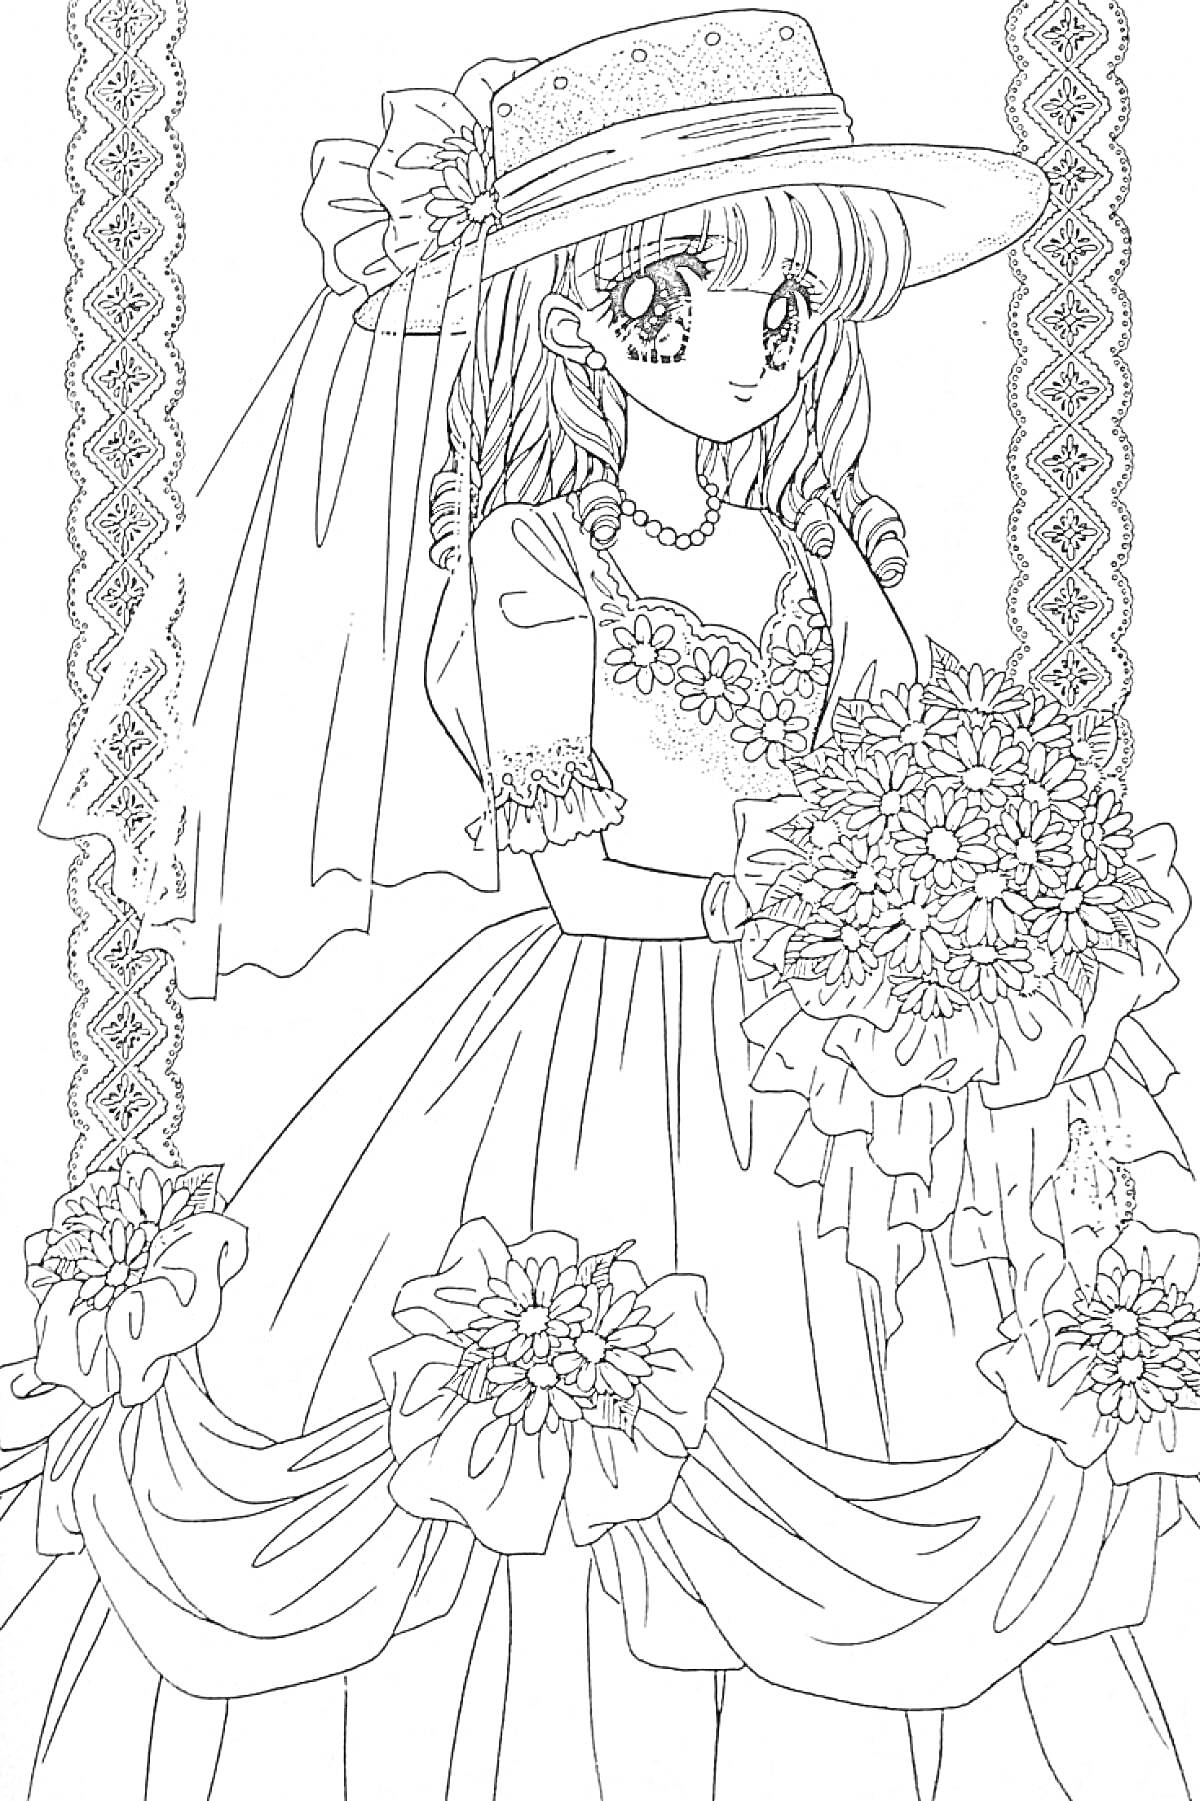 Раскраска Девушка в ажурном платье и шляпе, с букетом цветов, фоном из узорчатых лент